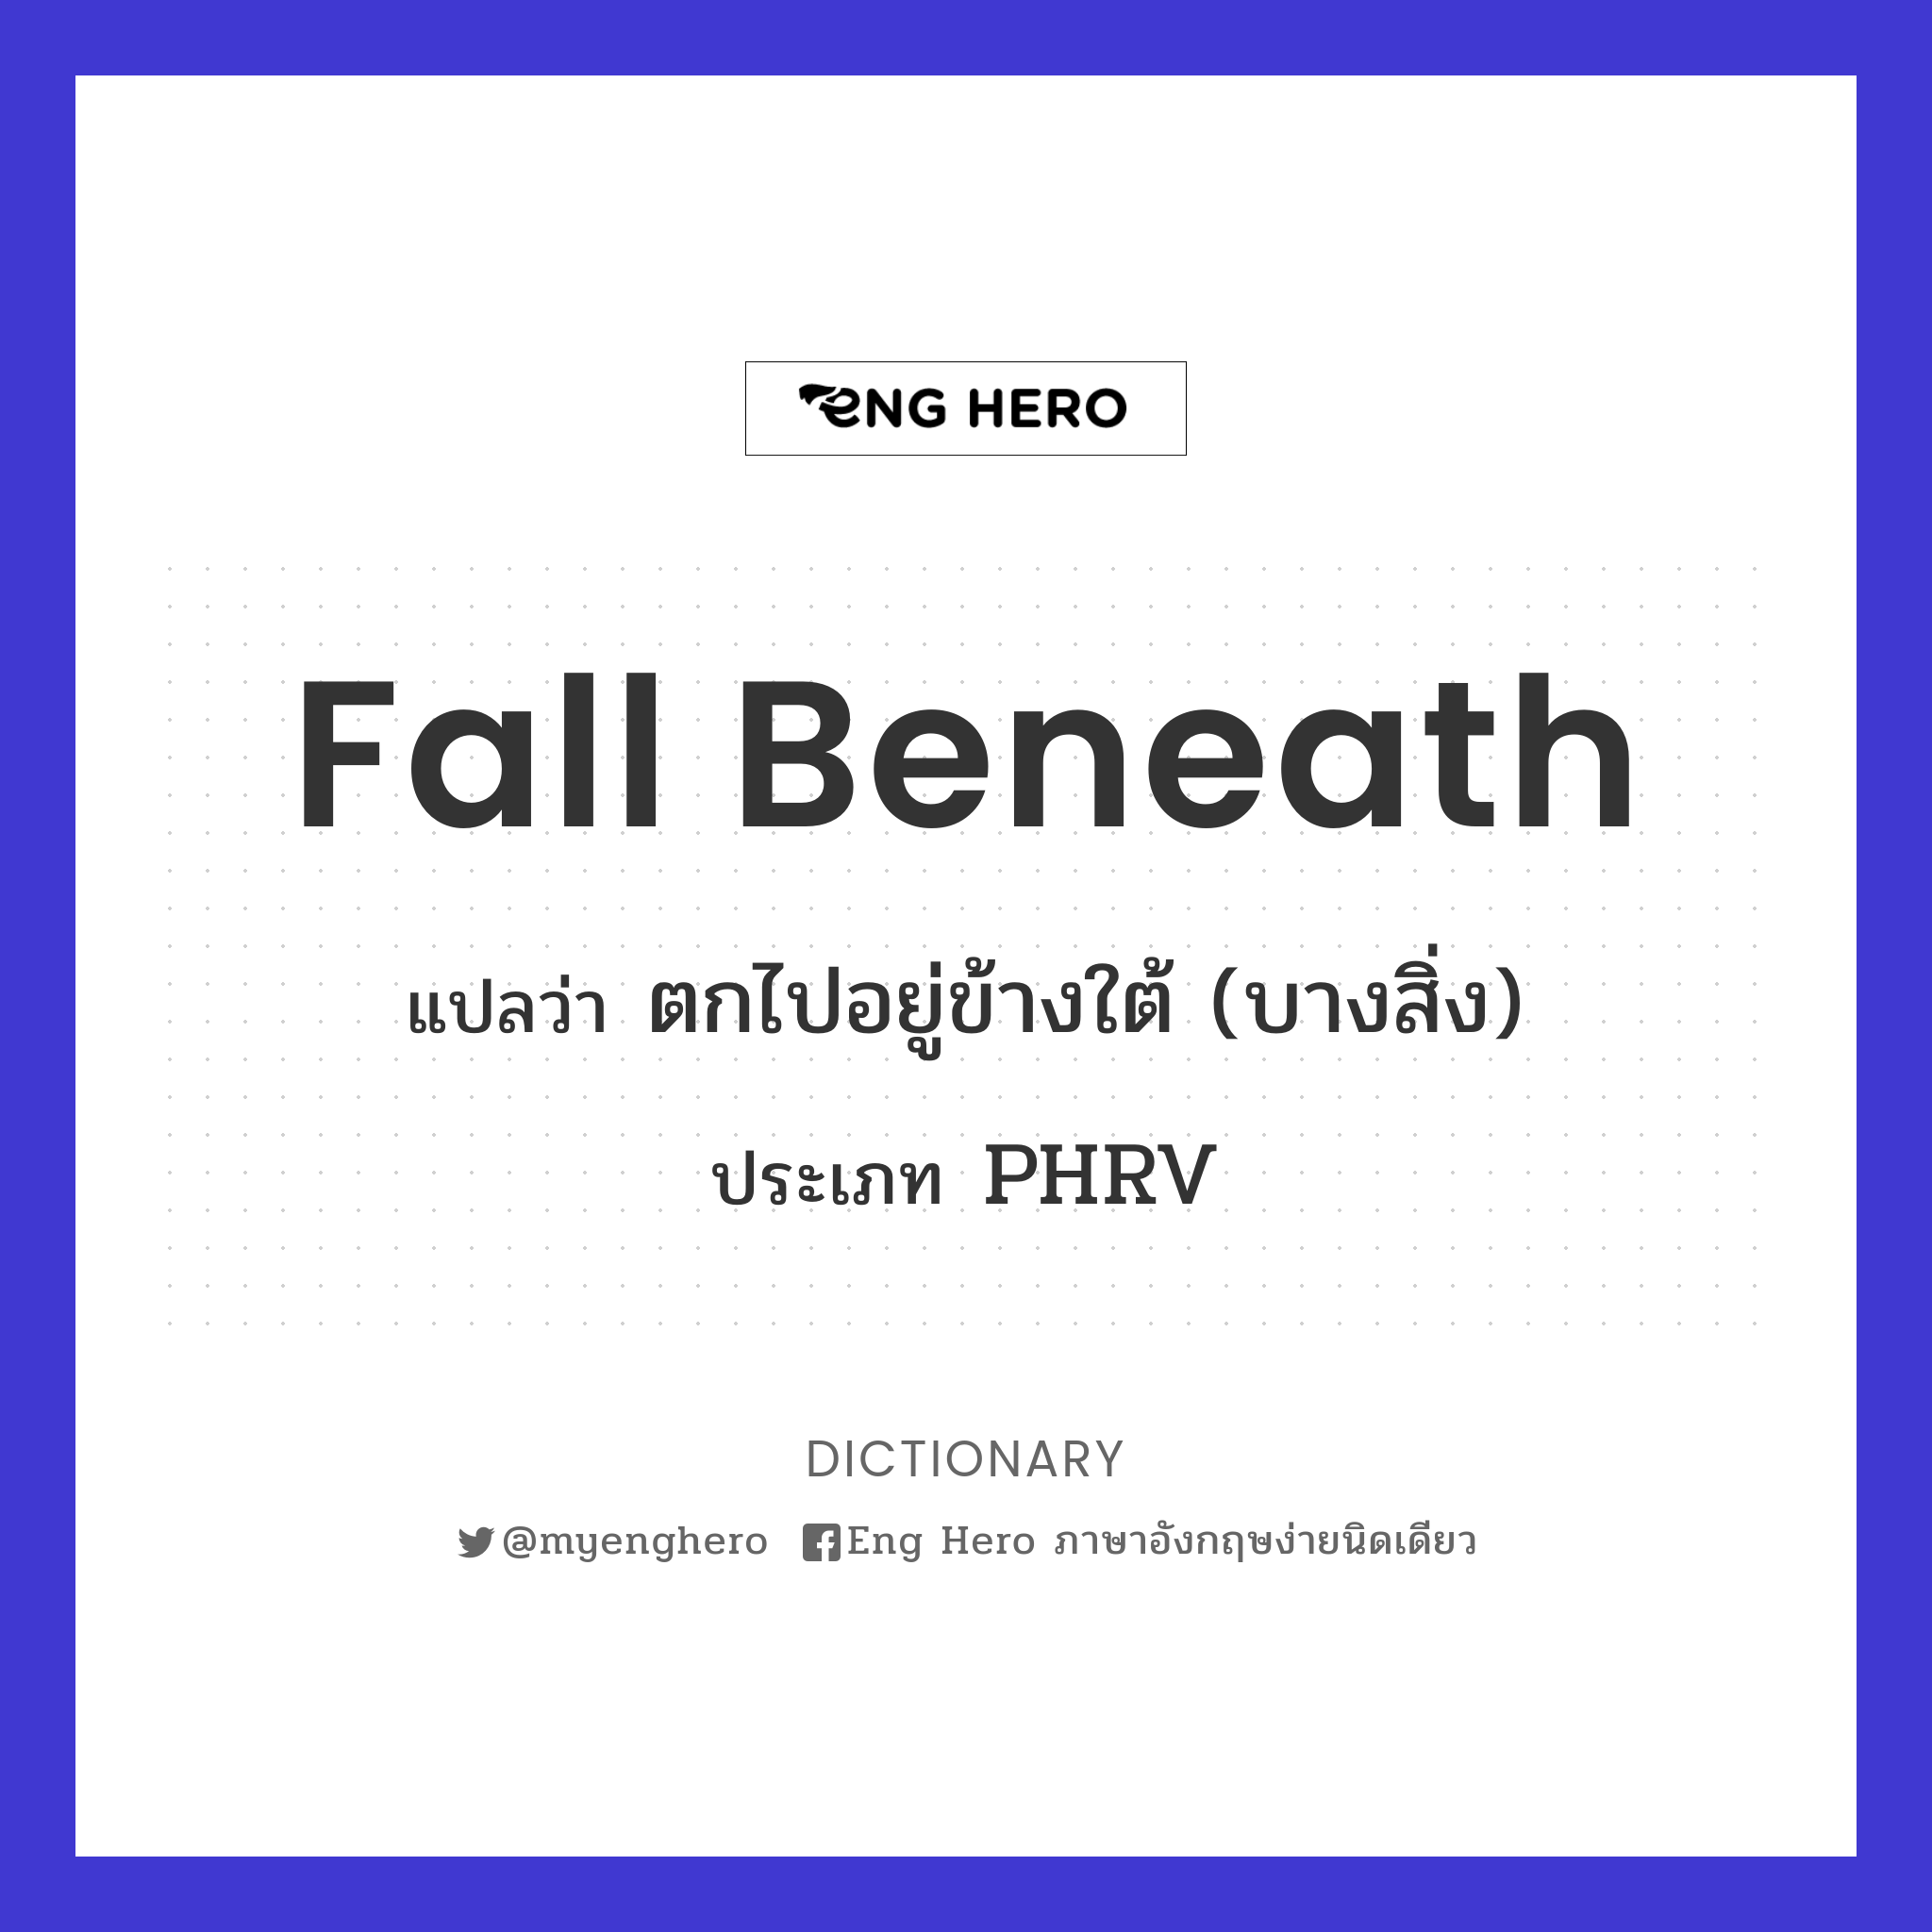 fall beneath